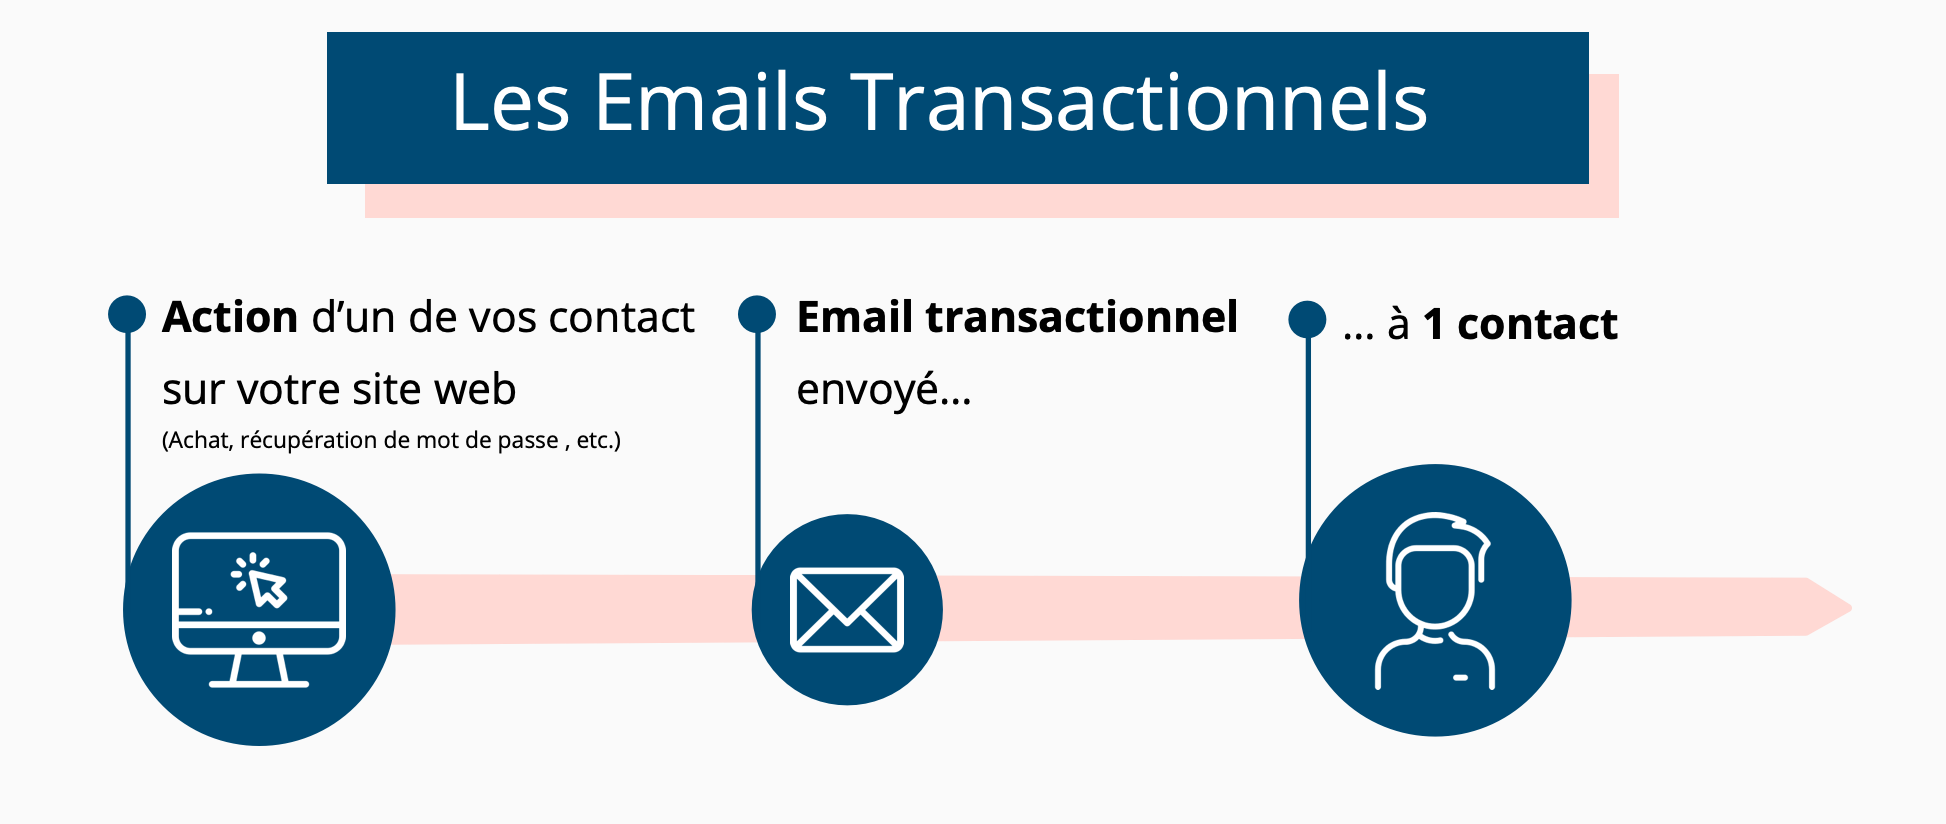 Transac_emails_explained_snag_Fr.png